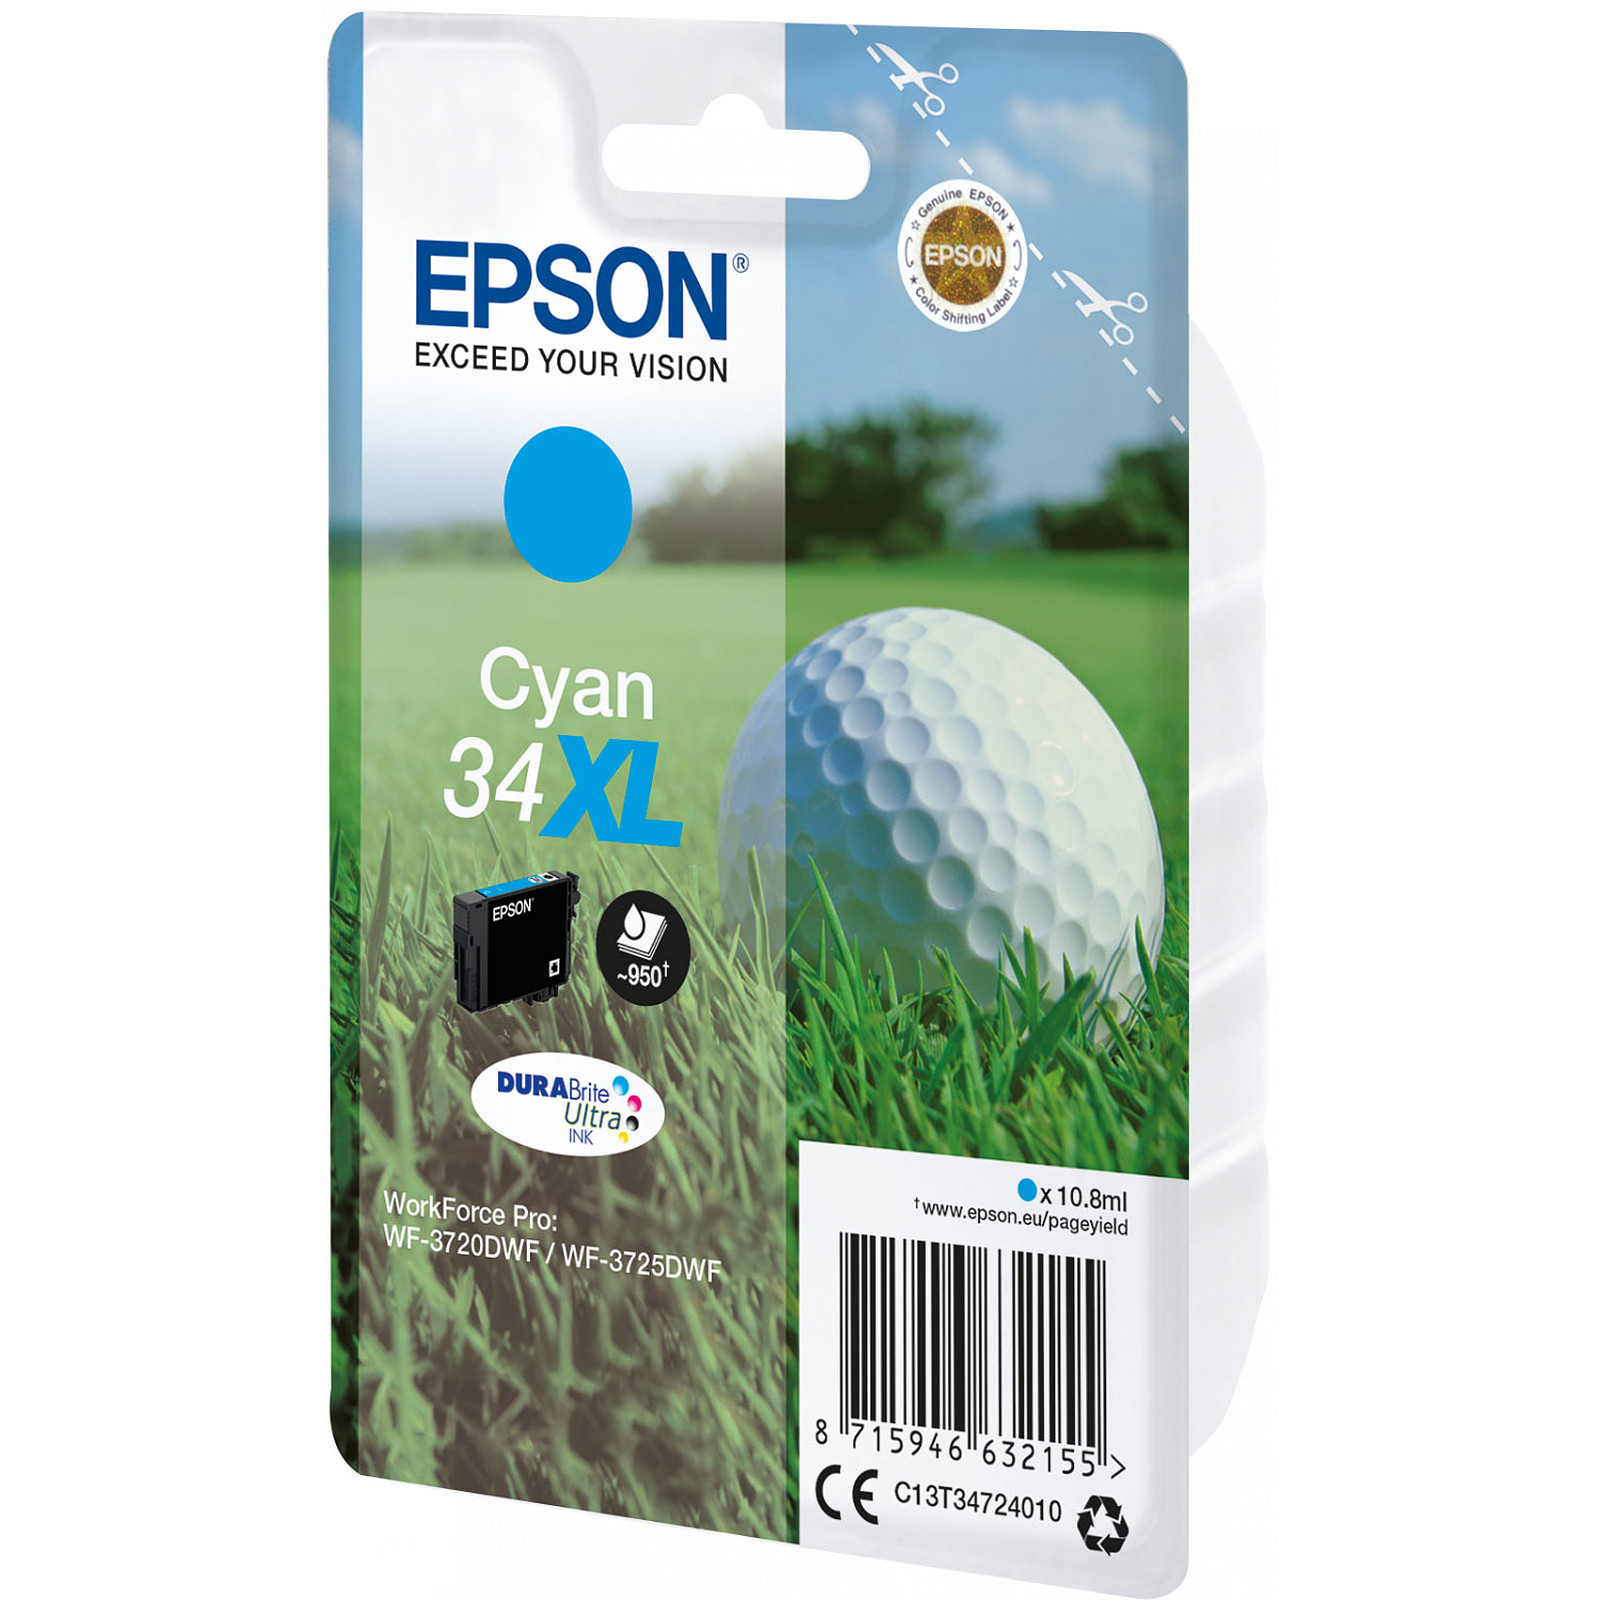 Epson Balle de Golf Cyan 34XL - Cartouche imprimante Epson